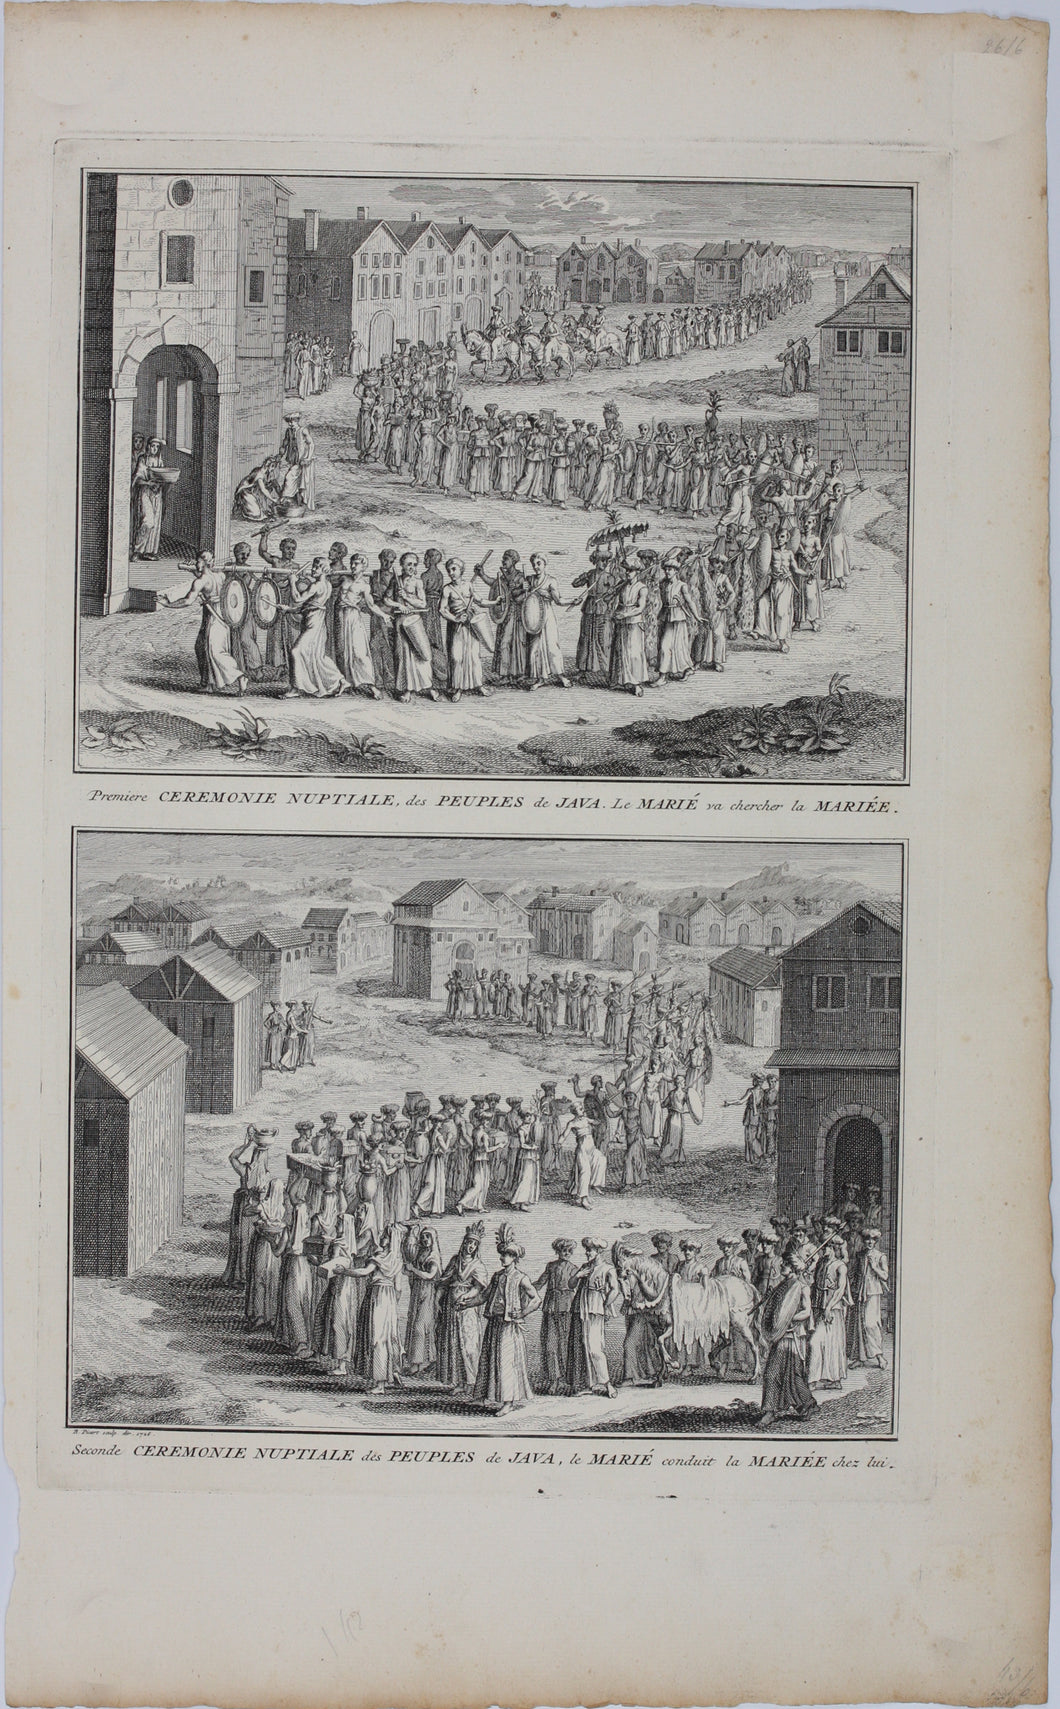 Bernard Picart. Wedding Ceremonies of the Peoples of Java. Engraving. 1726.